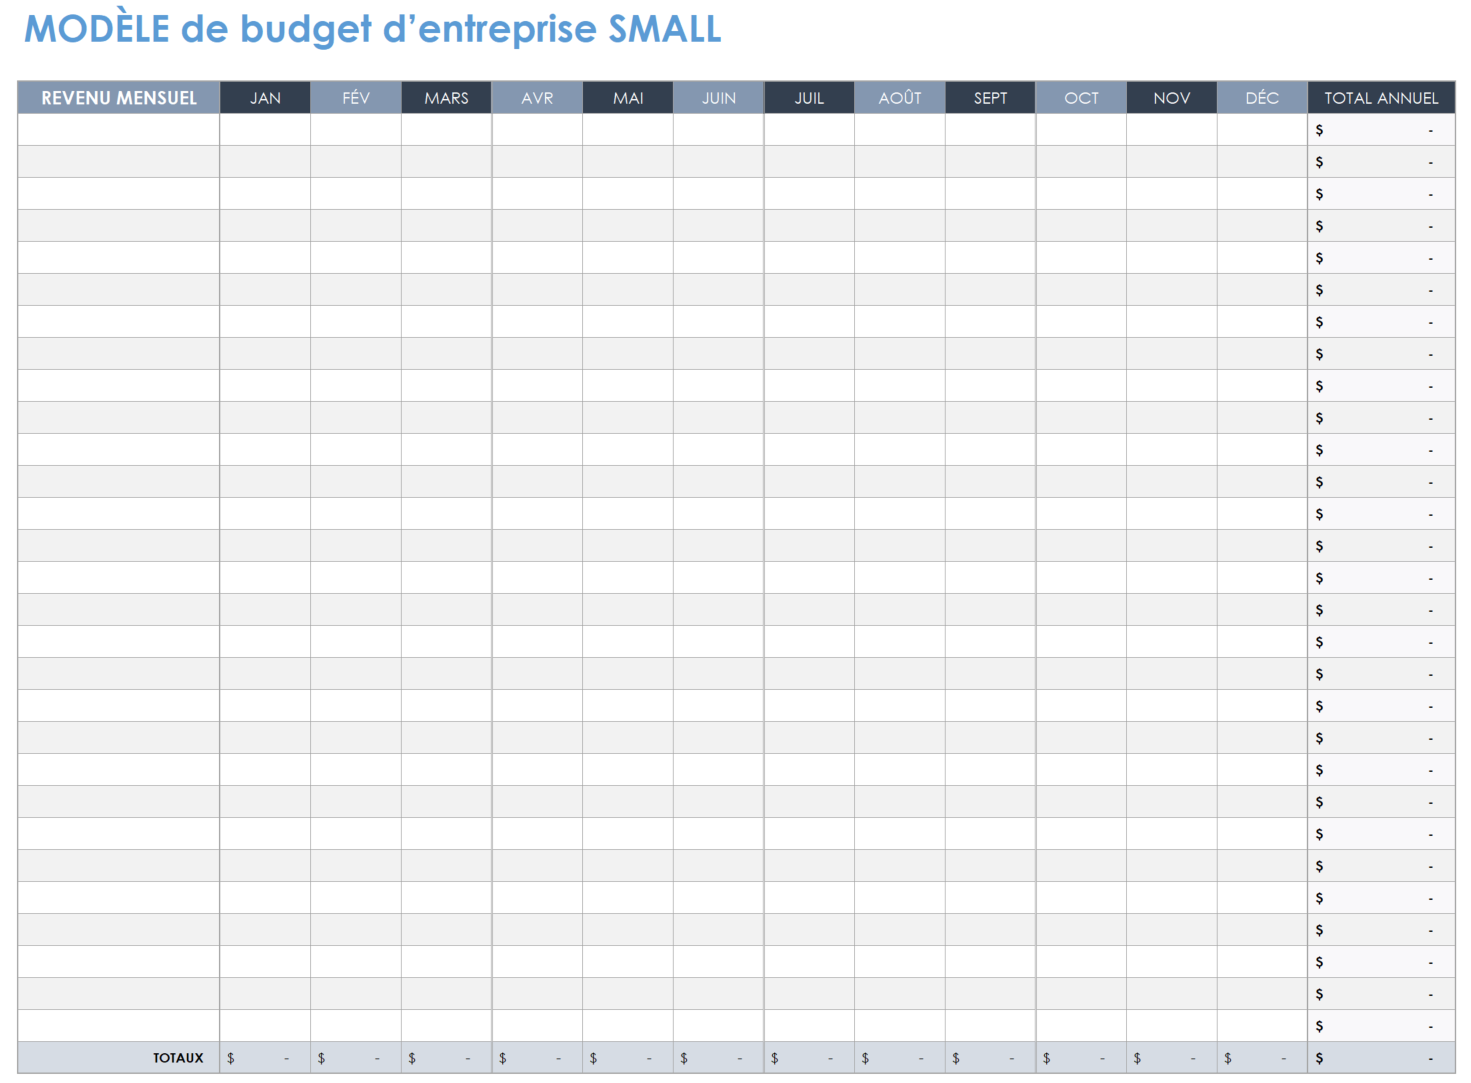 Budget des petites entreprises